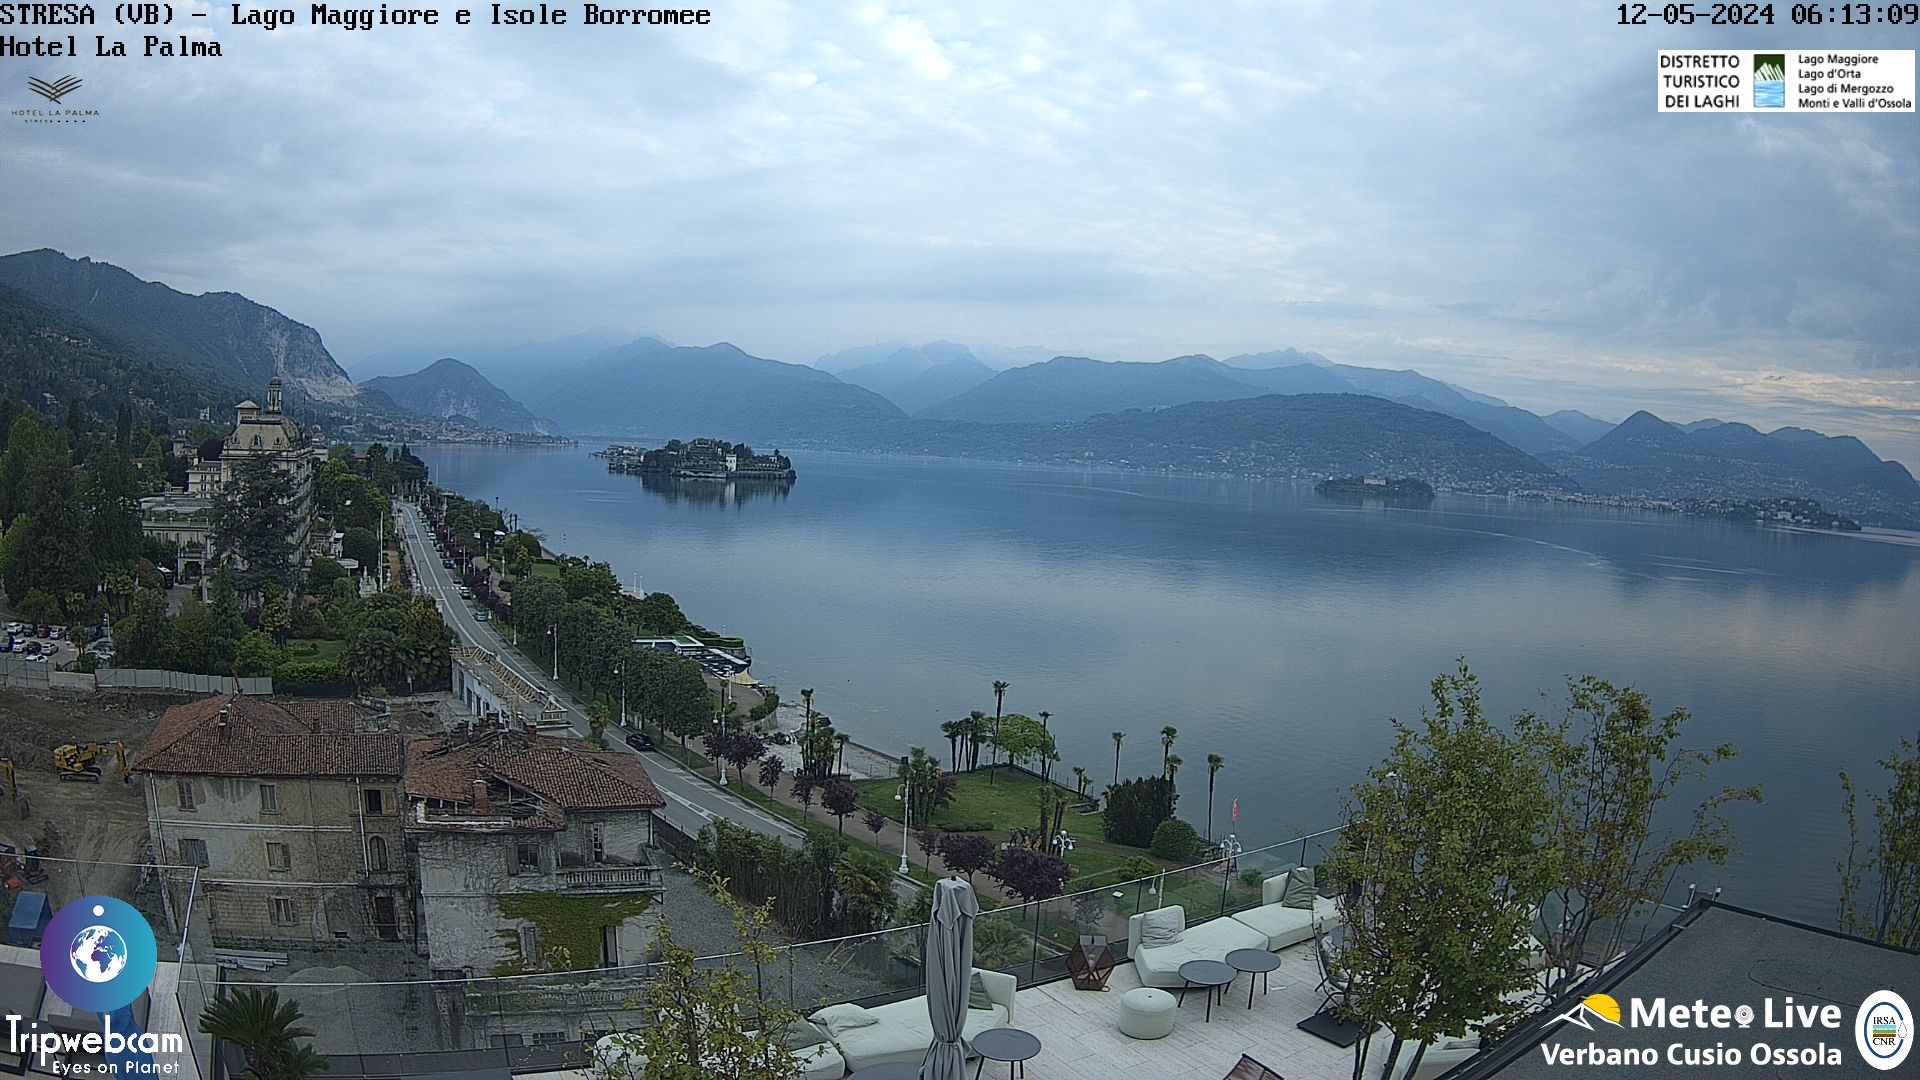 Stresa (Lago Maggiore) Tor. 07:17